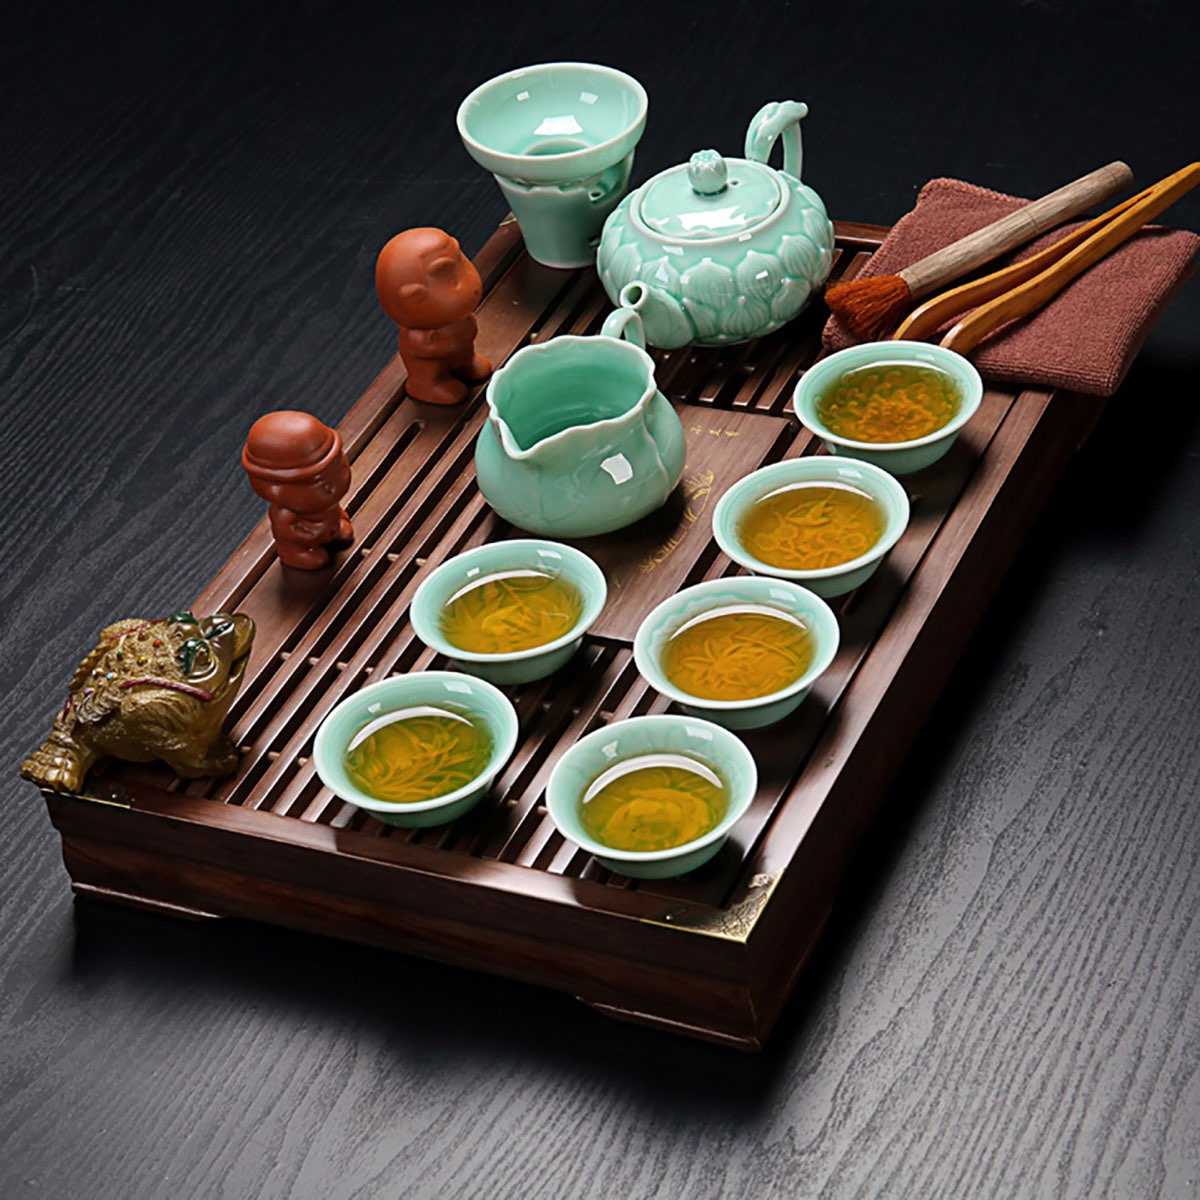 Чайная церемония цены. Походный набор для чайной церемонии "Turquoise Dragon", 12 предметов, MAXXMALUS. Набор для чайной церемонии китайский. Посуда для чайной церемонии. Набор для чаепития китайский.